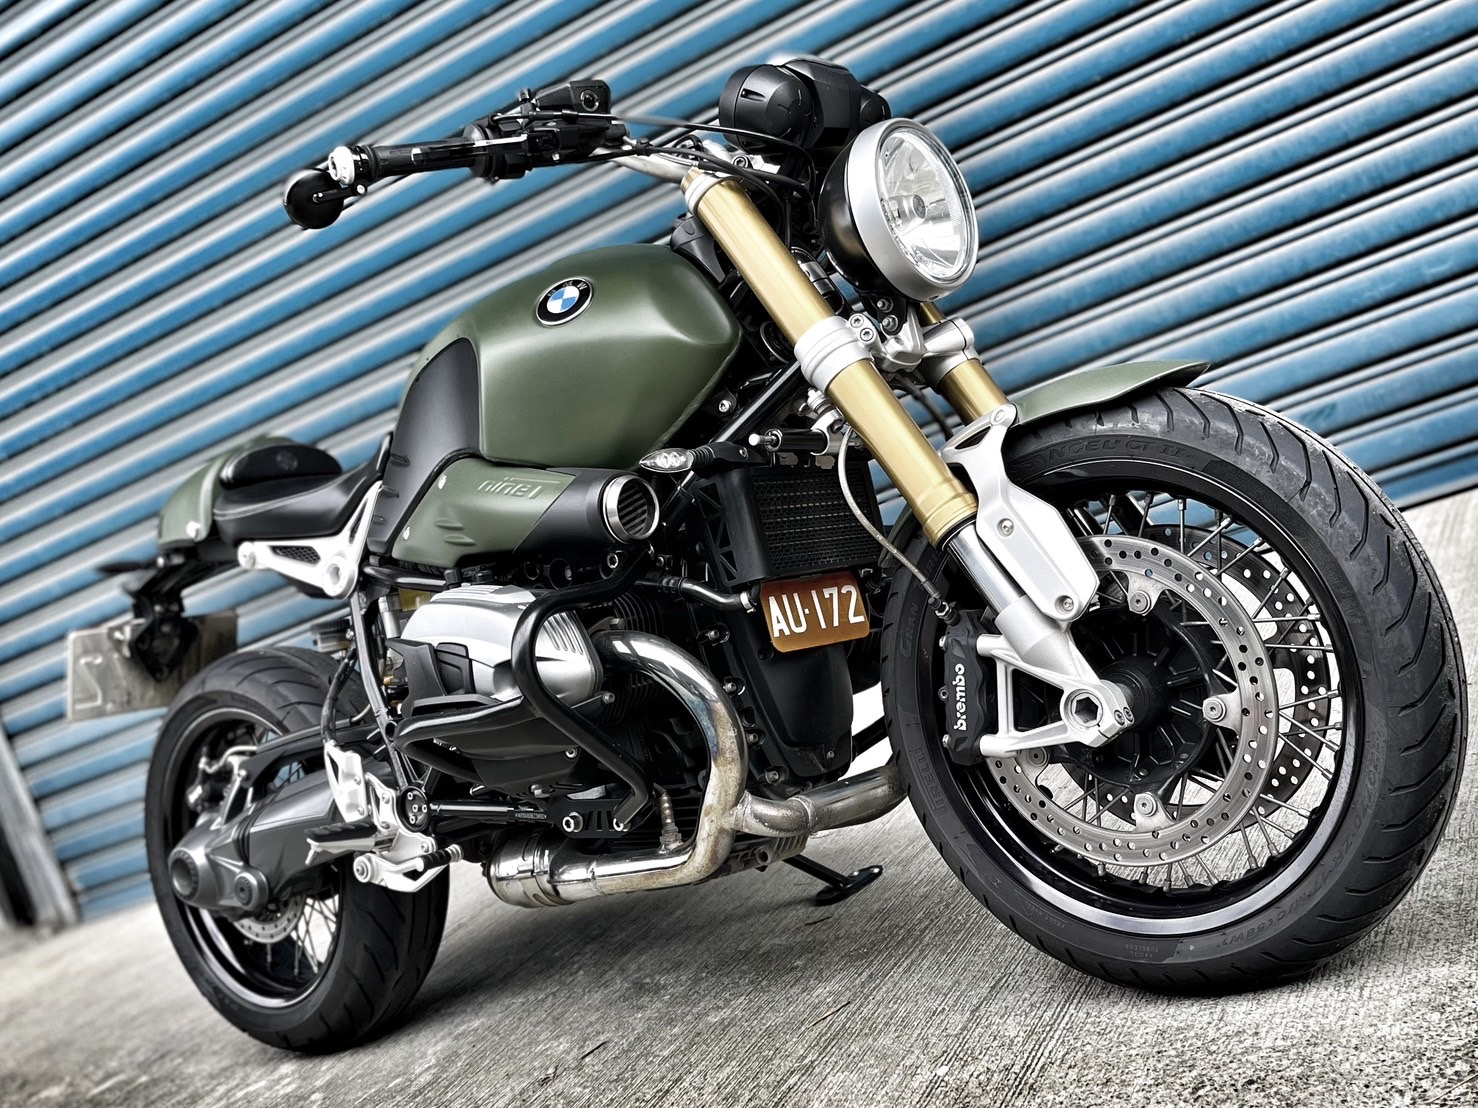 【小資族二手重機買賣】BMW R nineT - 「Webike-摩托車市」 視覺改裝 無摔無事故 小資族二手重機買賣